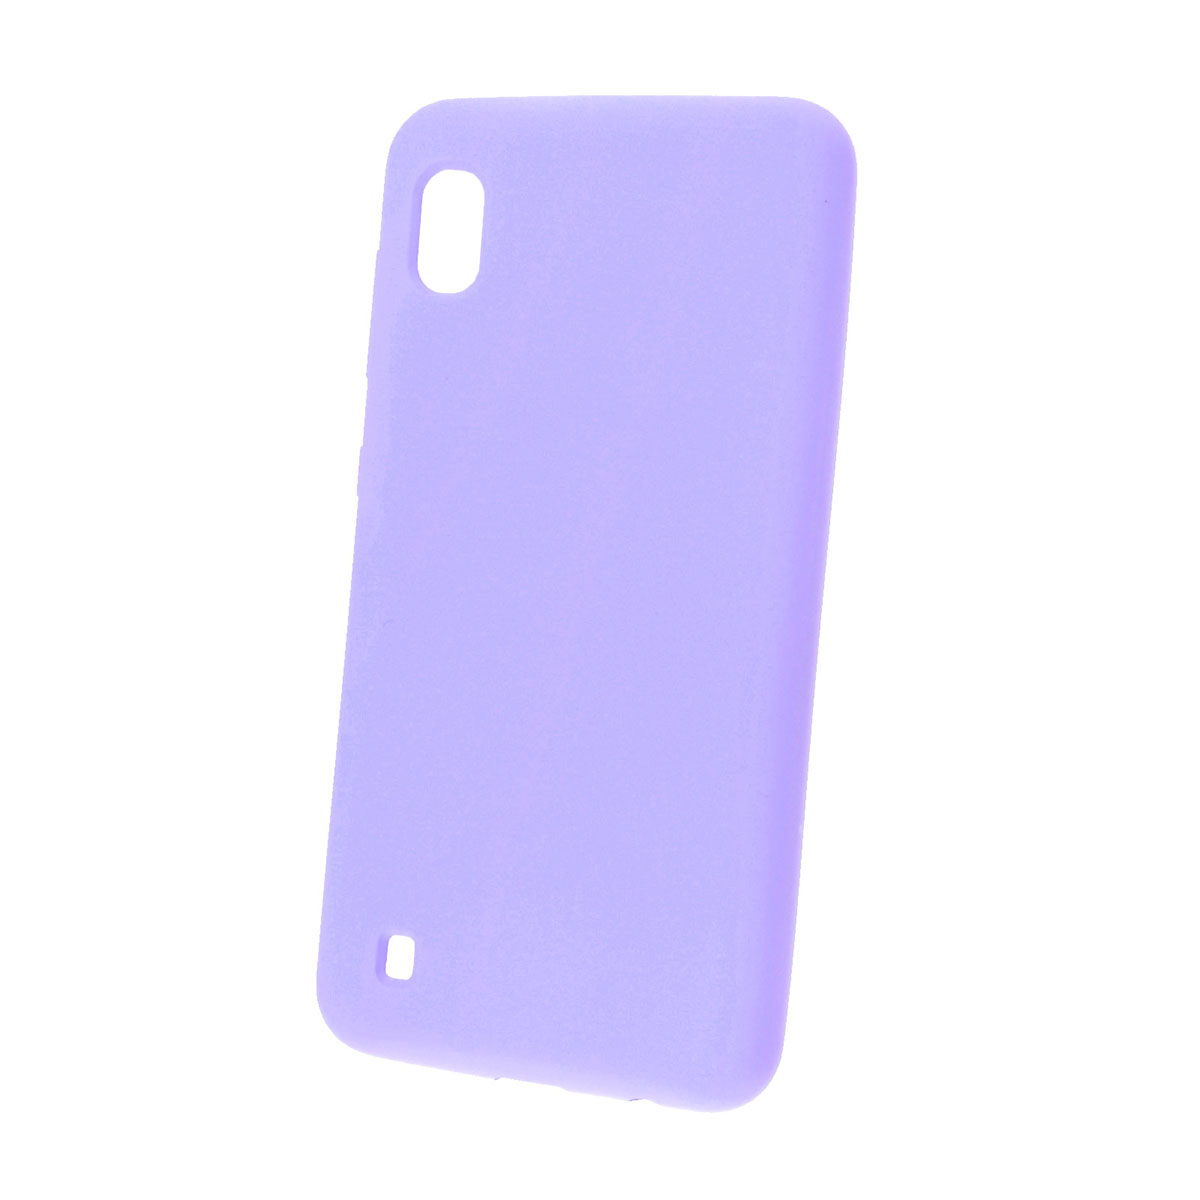 Чехол накладка Silicon Cover для Samsung A10 2019 (SM-A105), силикон, бархат, цвет светло фиолетовый.